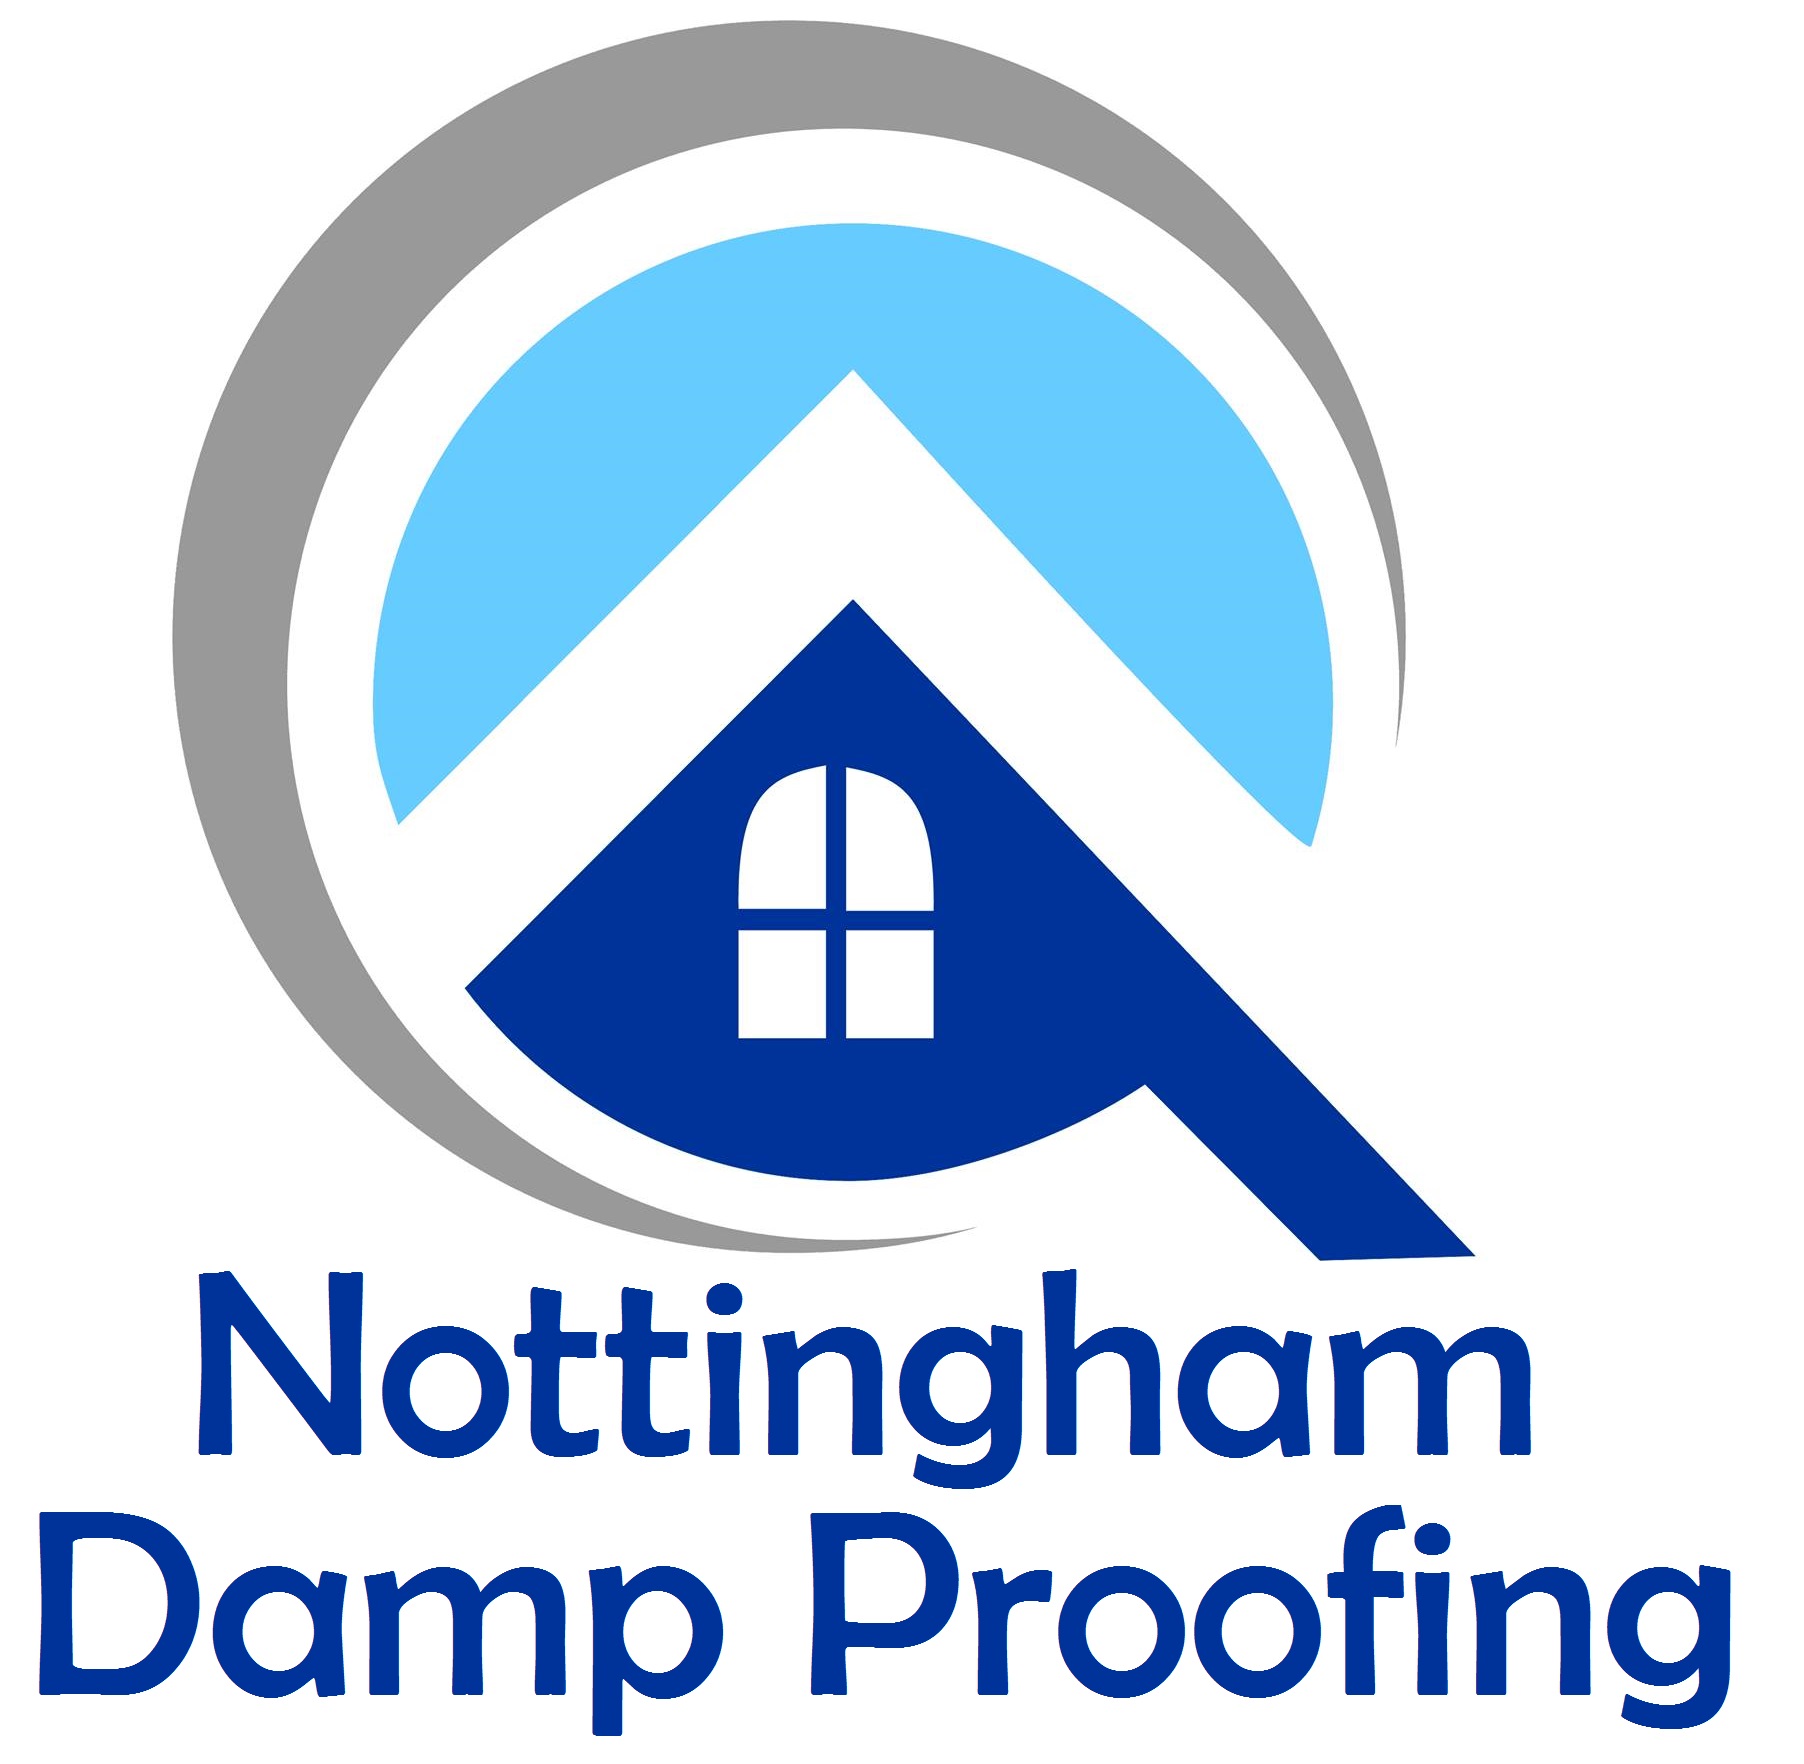 Nottingham Damp Proofing